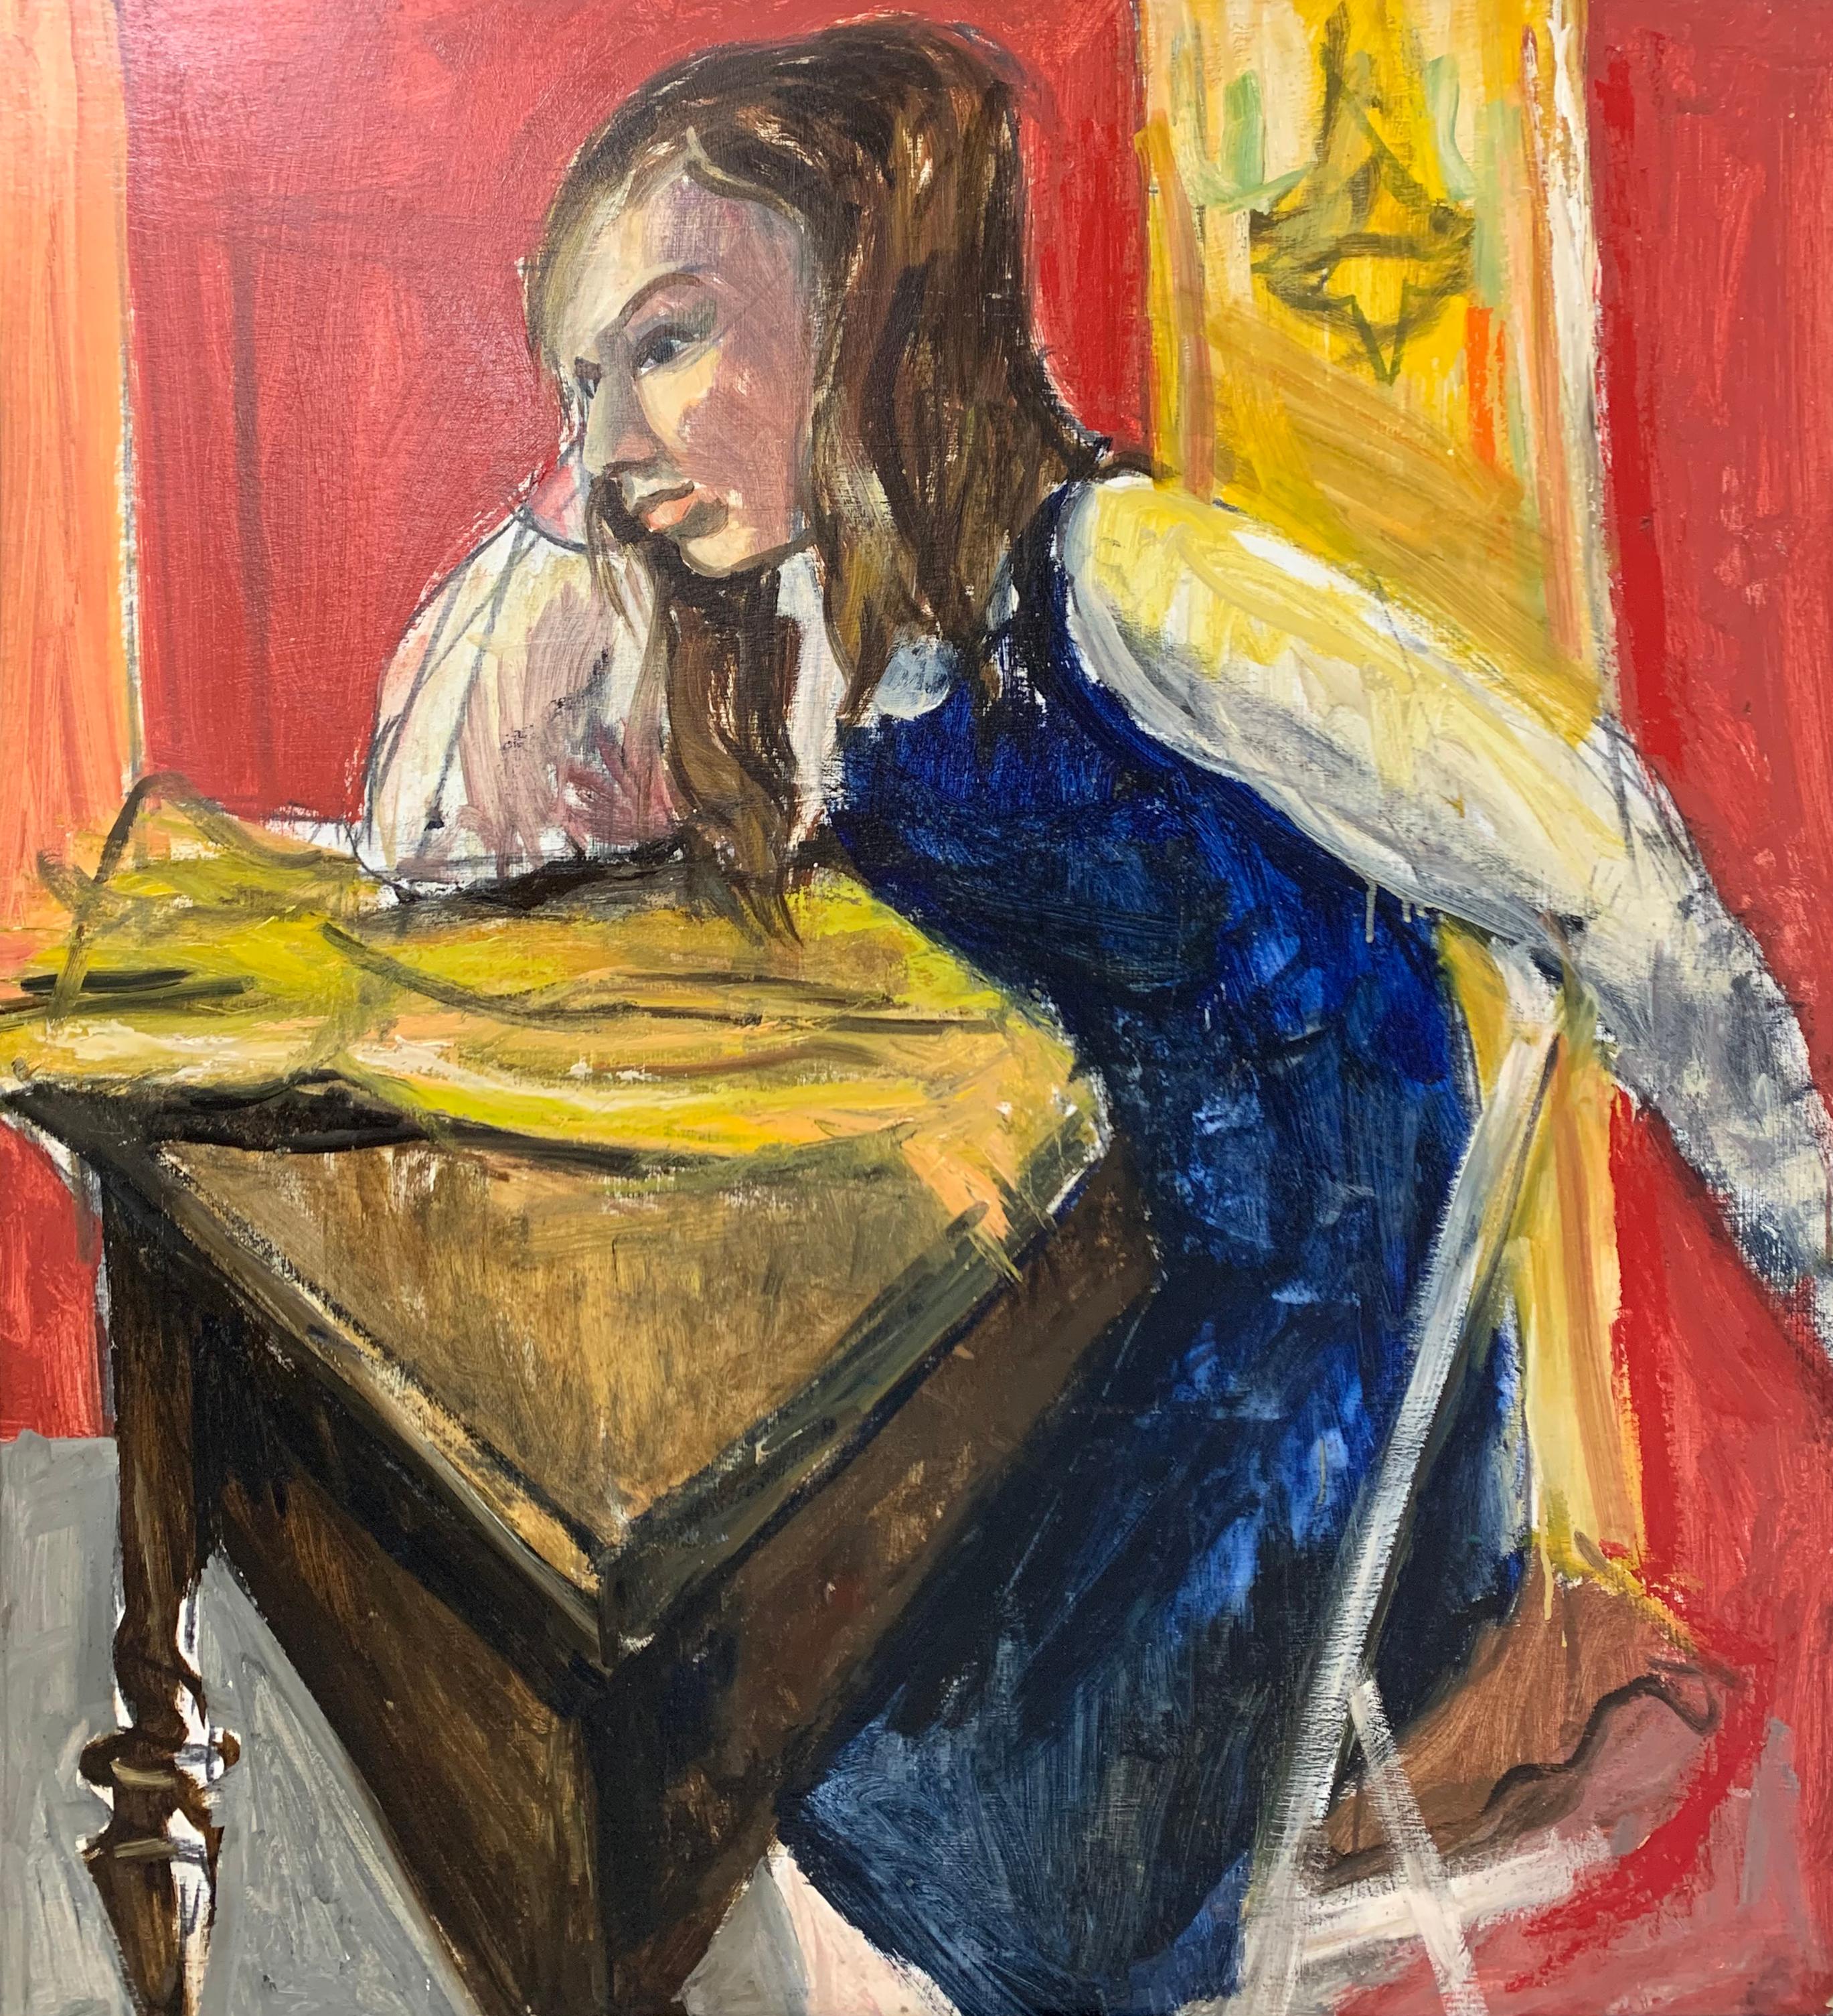 Mädchen am Schreibtisch, Expressionistisches Porträt einer jungen Frau von Philadelphia – Painting von Bernard Harmon